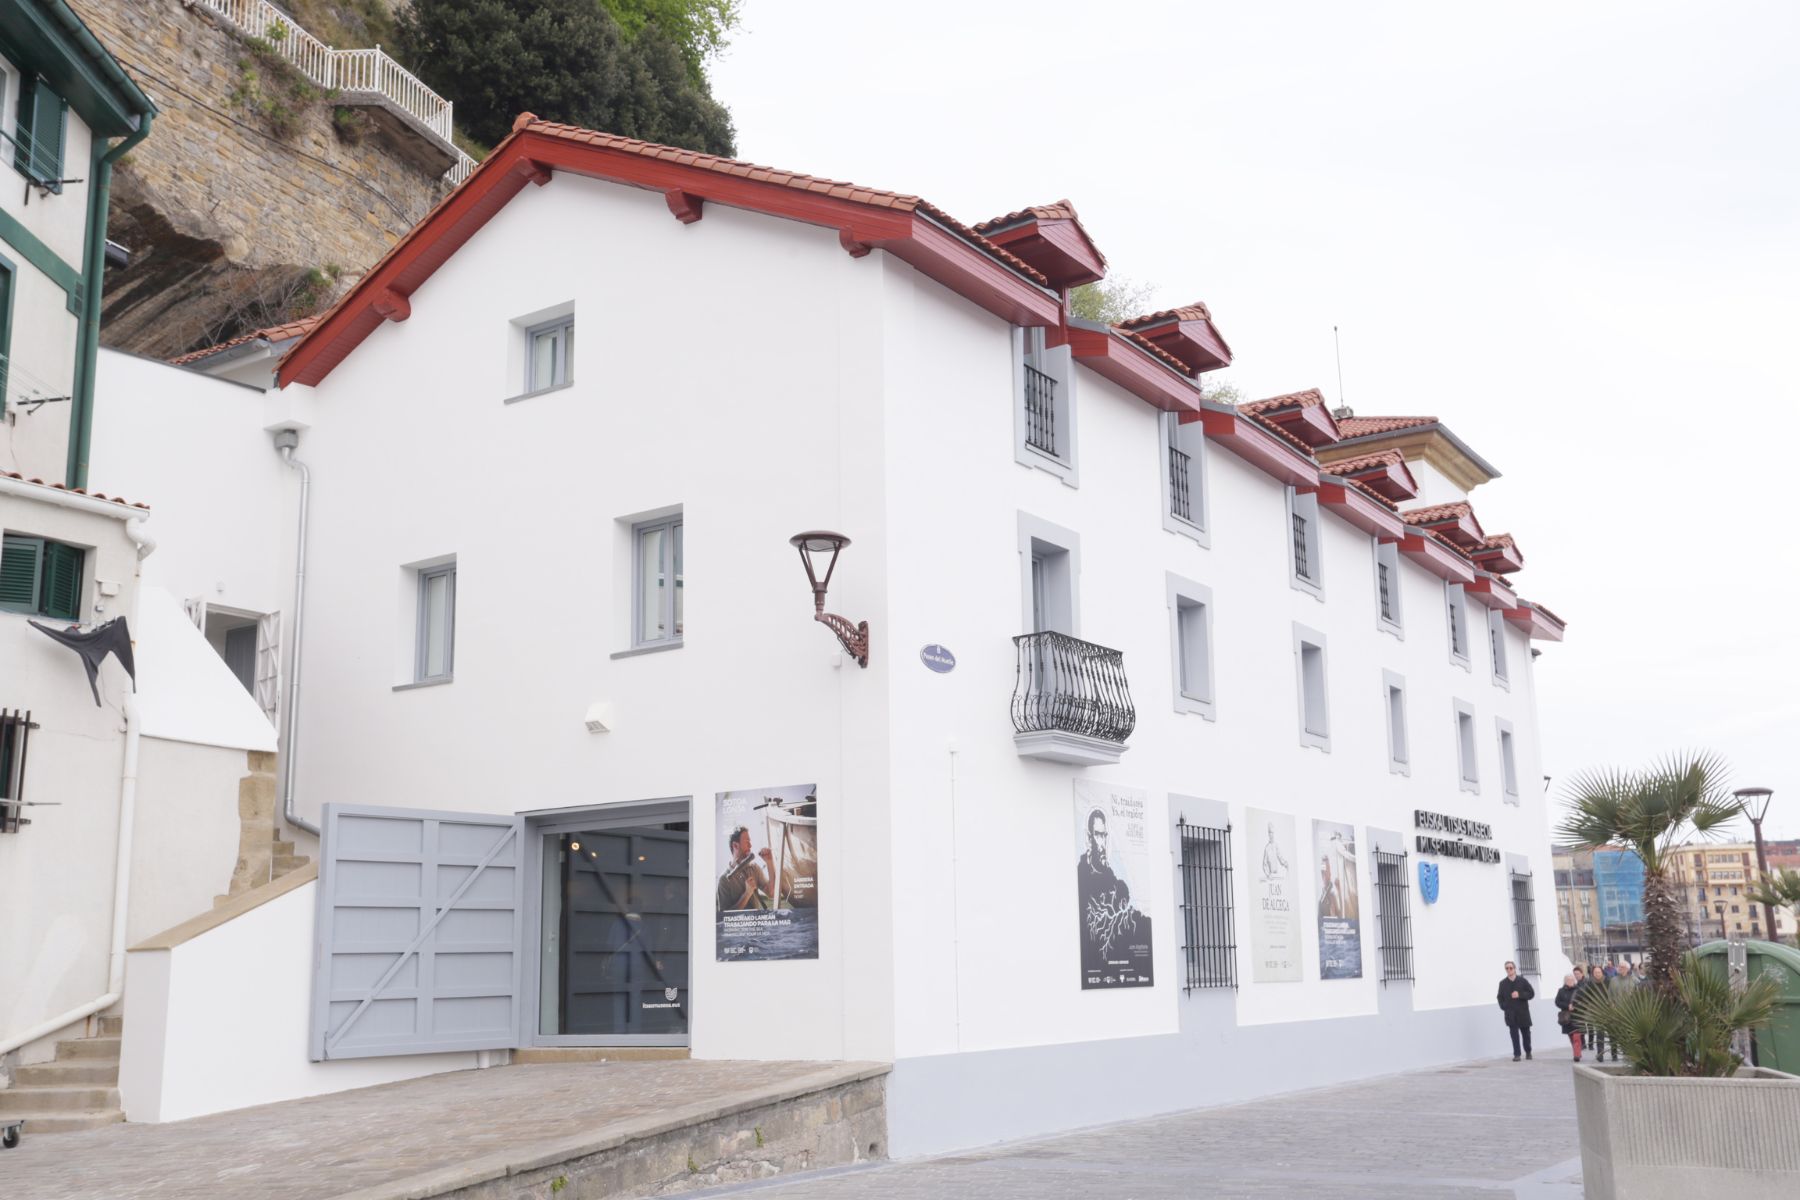 El Euskal Itsas Museoa entre los 20 mejores museos marítimos europeos